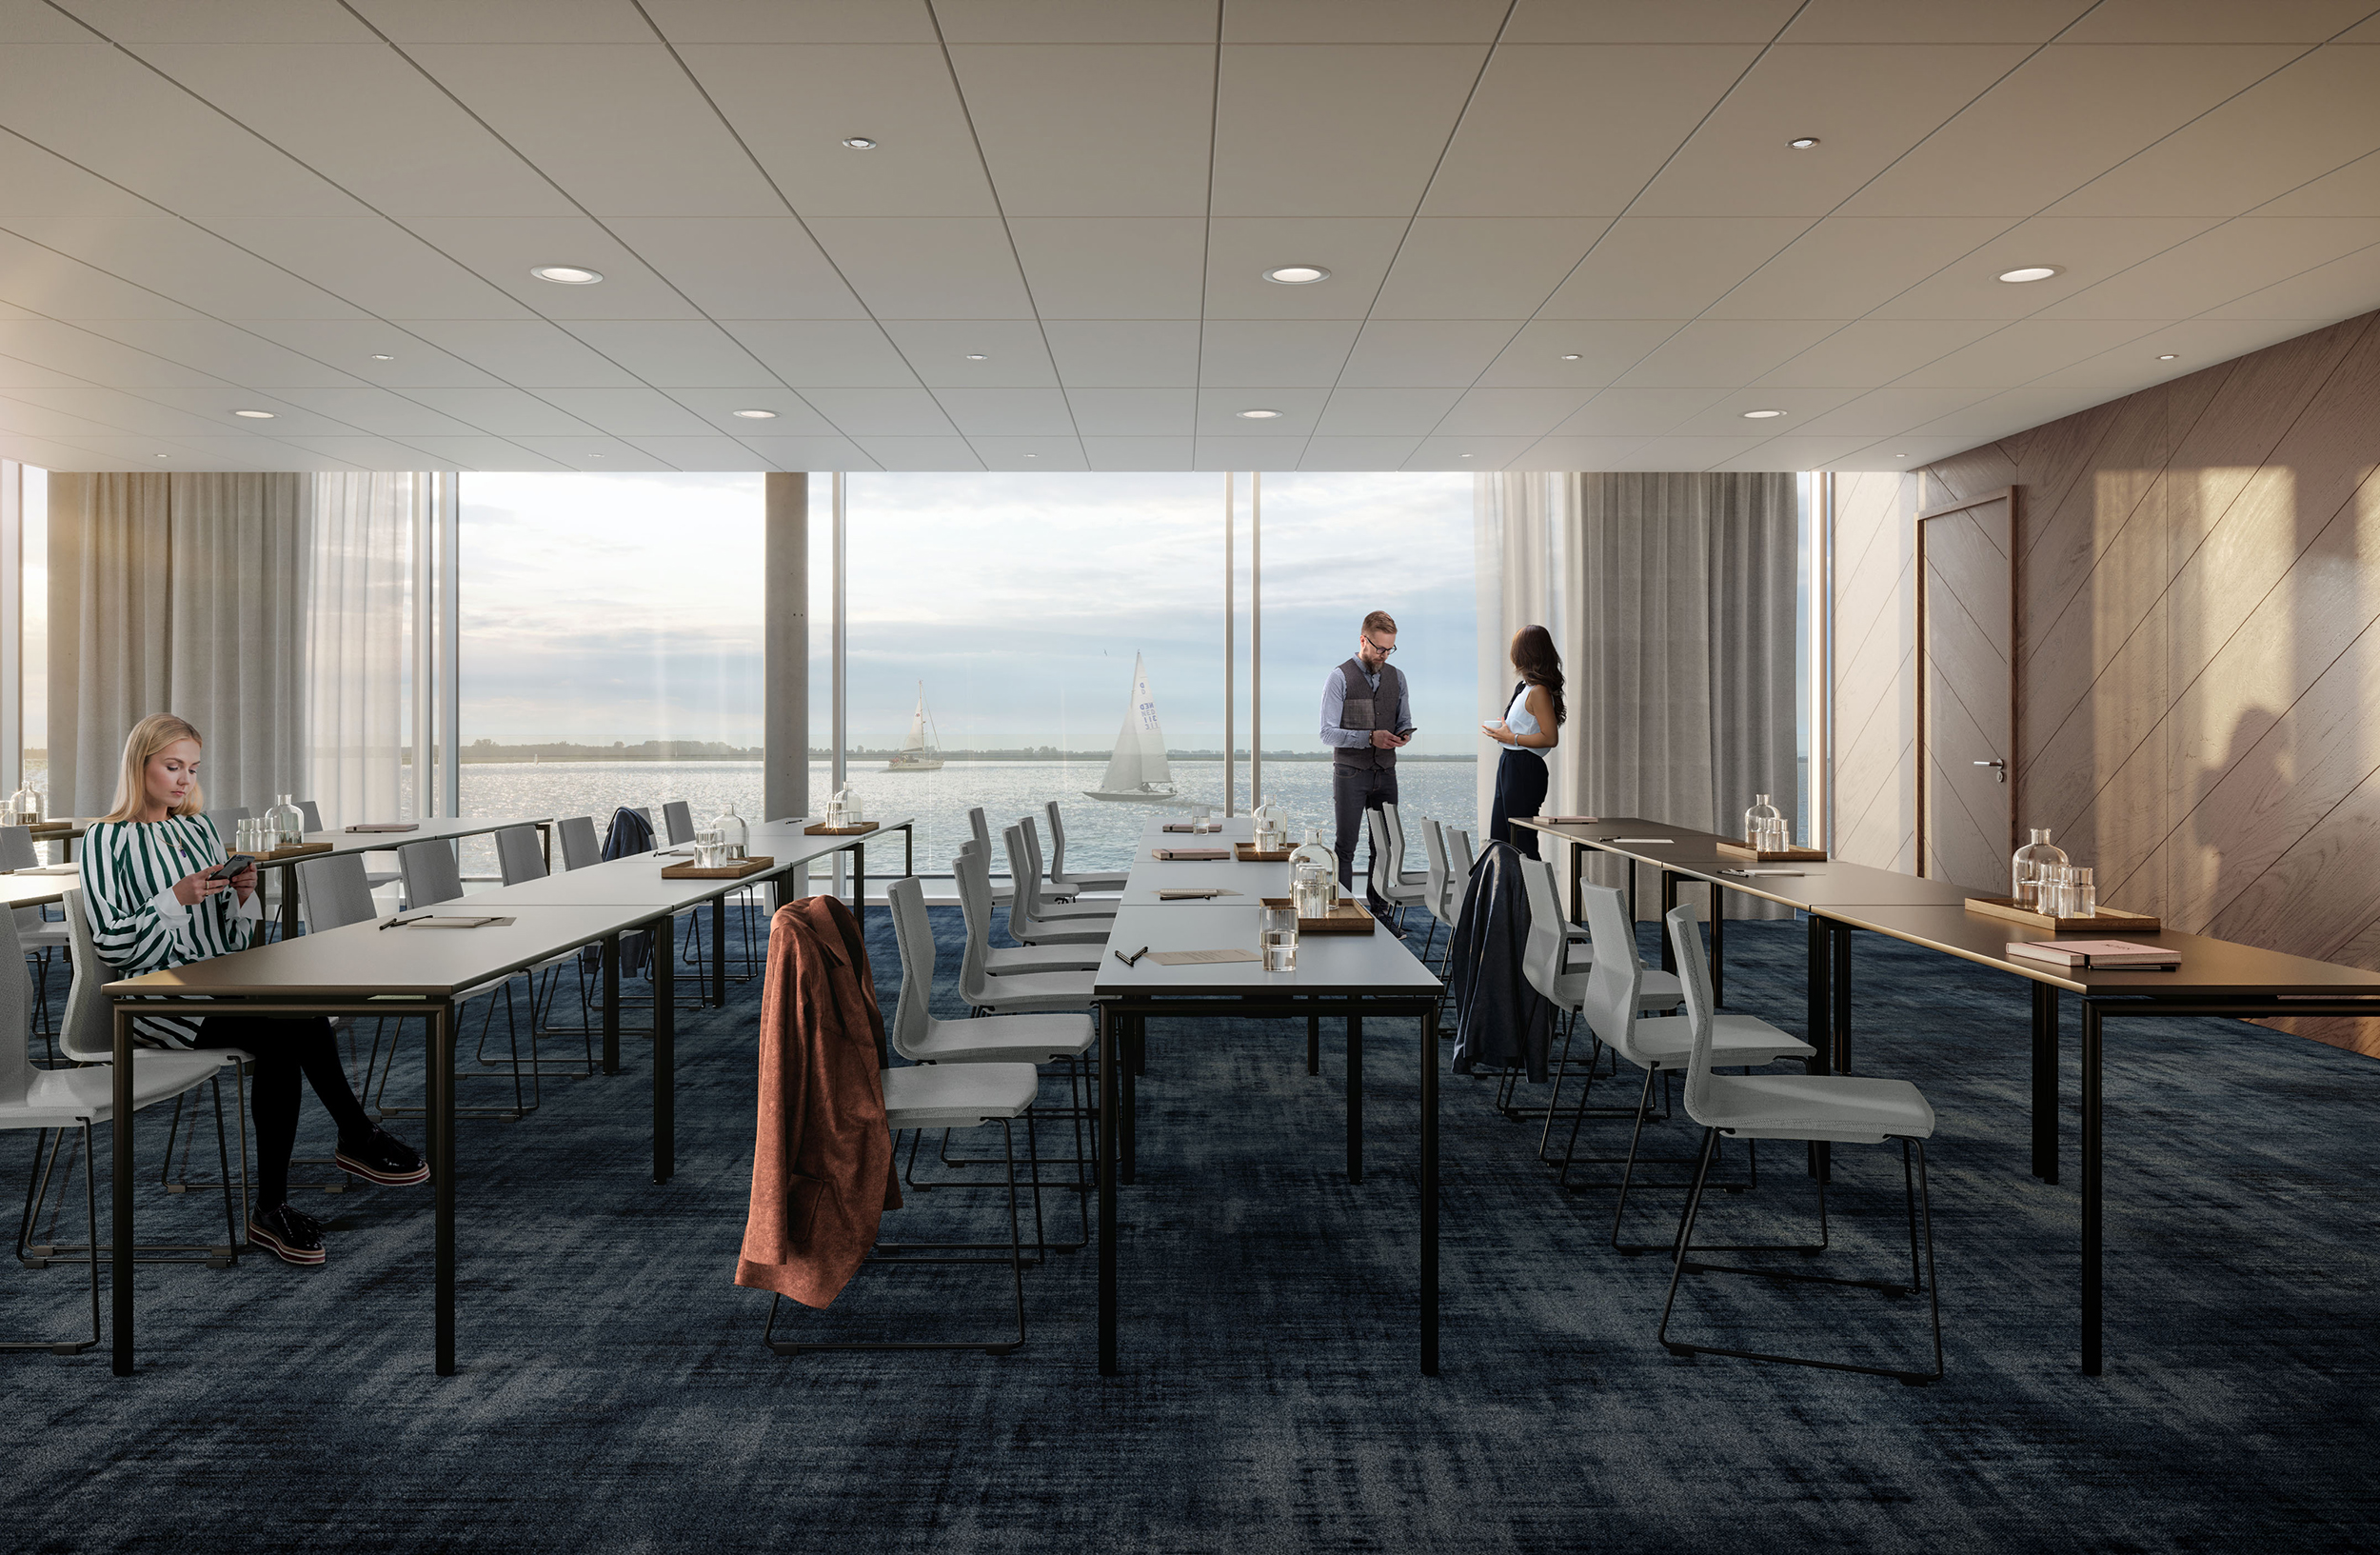 Interior Design Concept For New Quality Hotel Match Mod